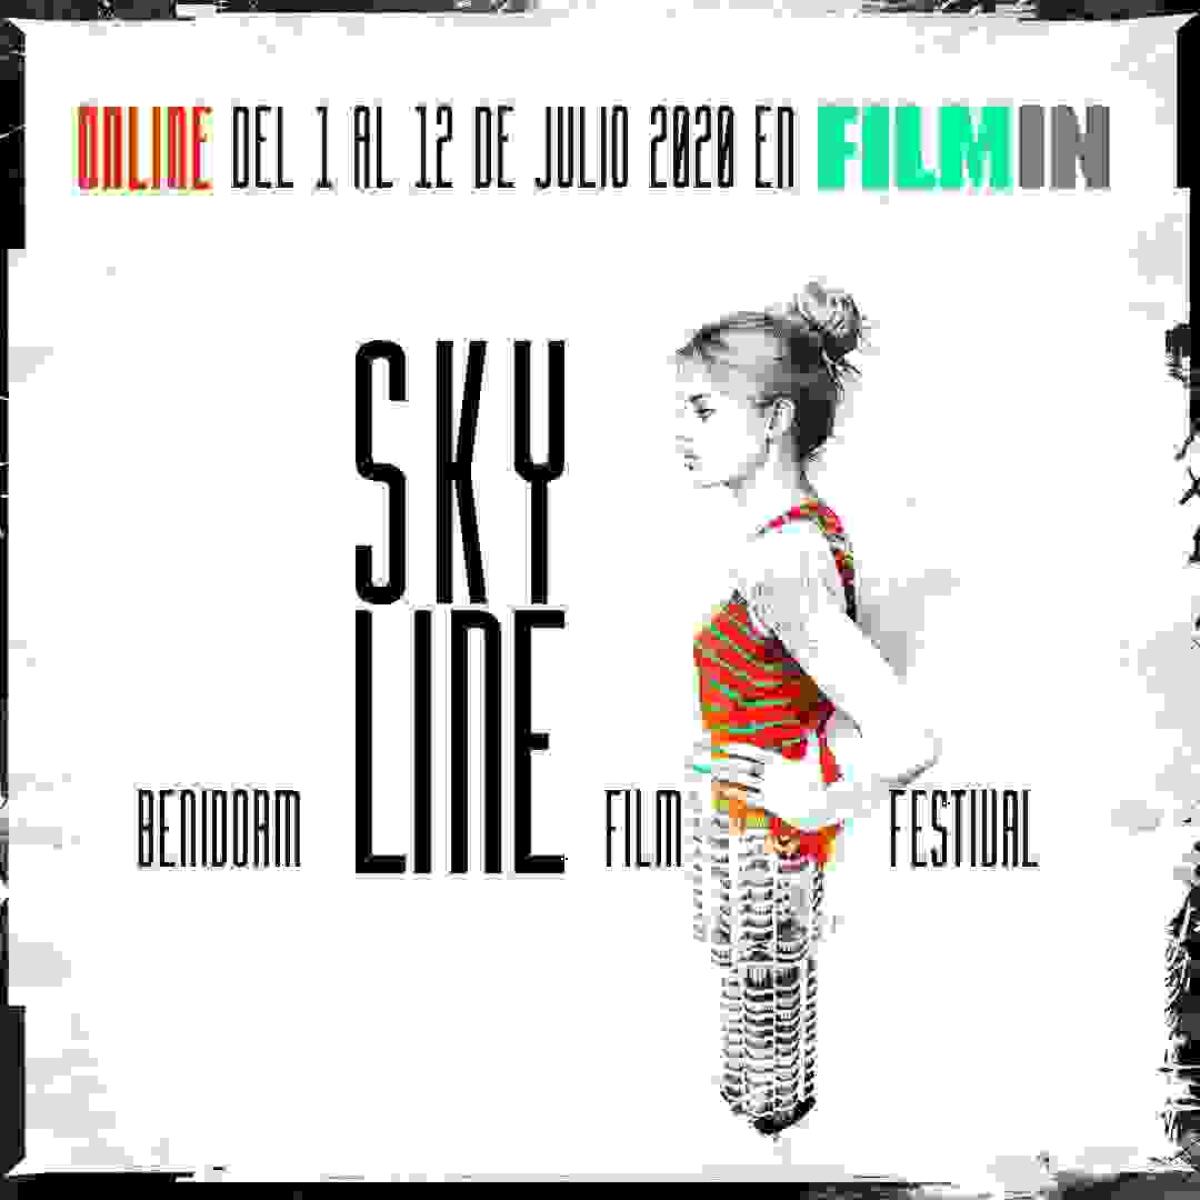 La 4ª edición del Skyline Benidorm Film Festival será online a través de la plataforma Filmin.